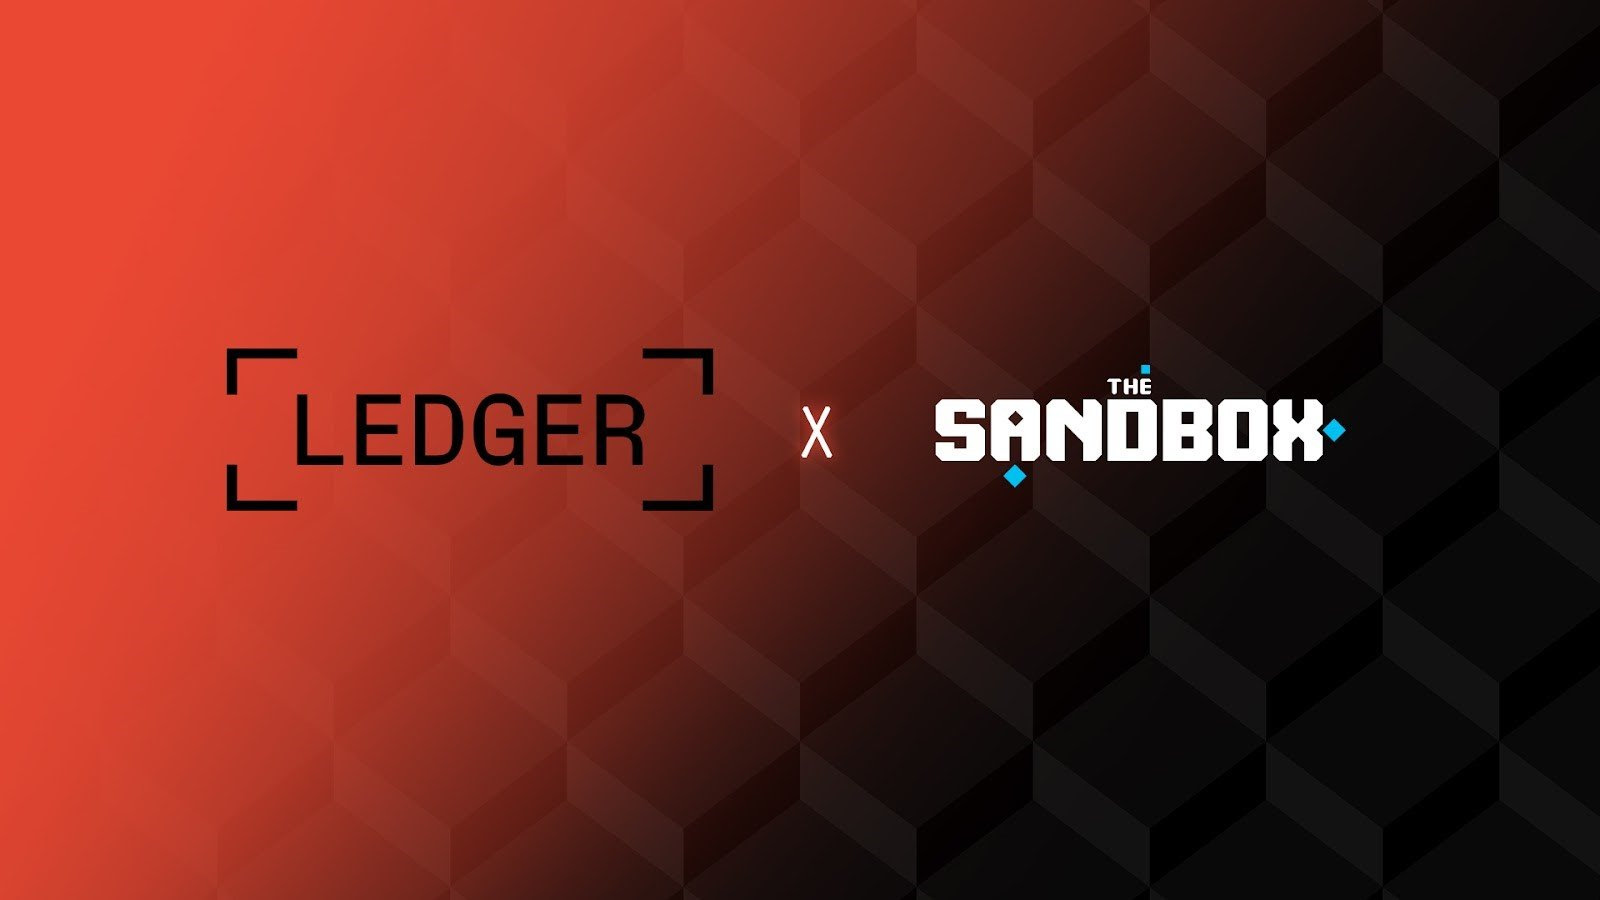 Il metaverso diventa più sicuro grazie alla partnership di The Sandbox e Ledger